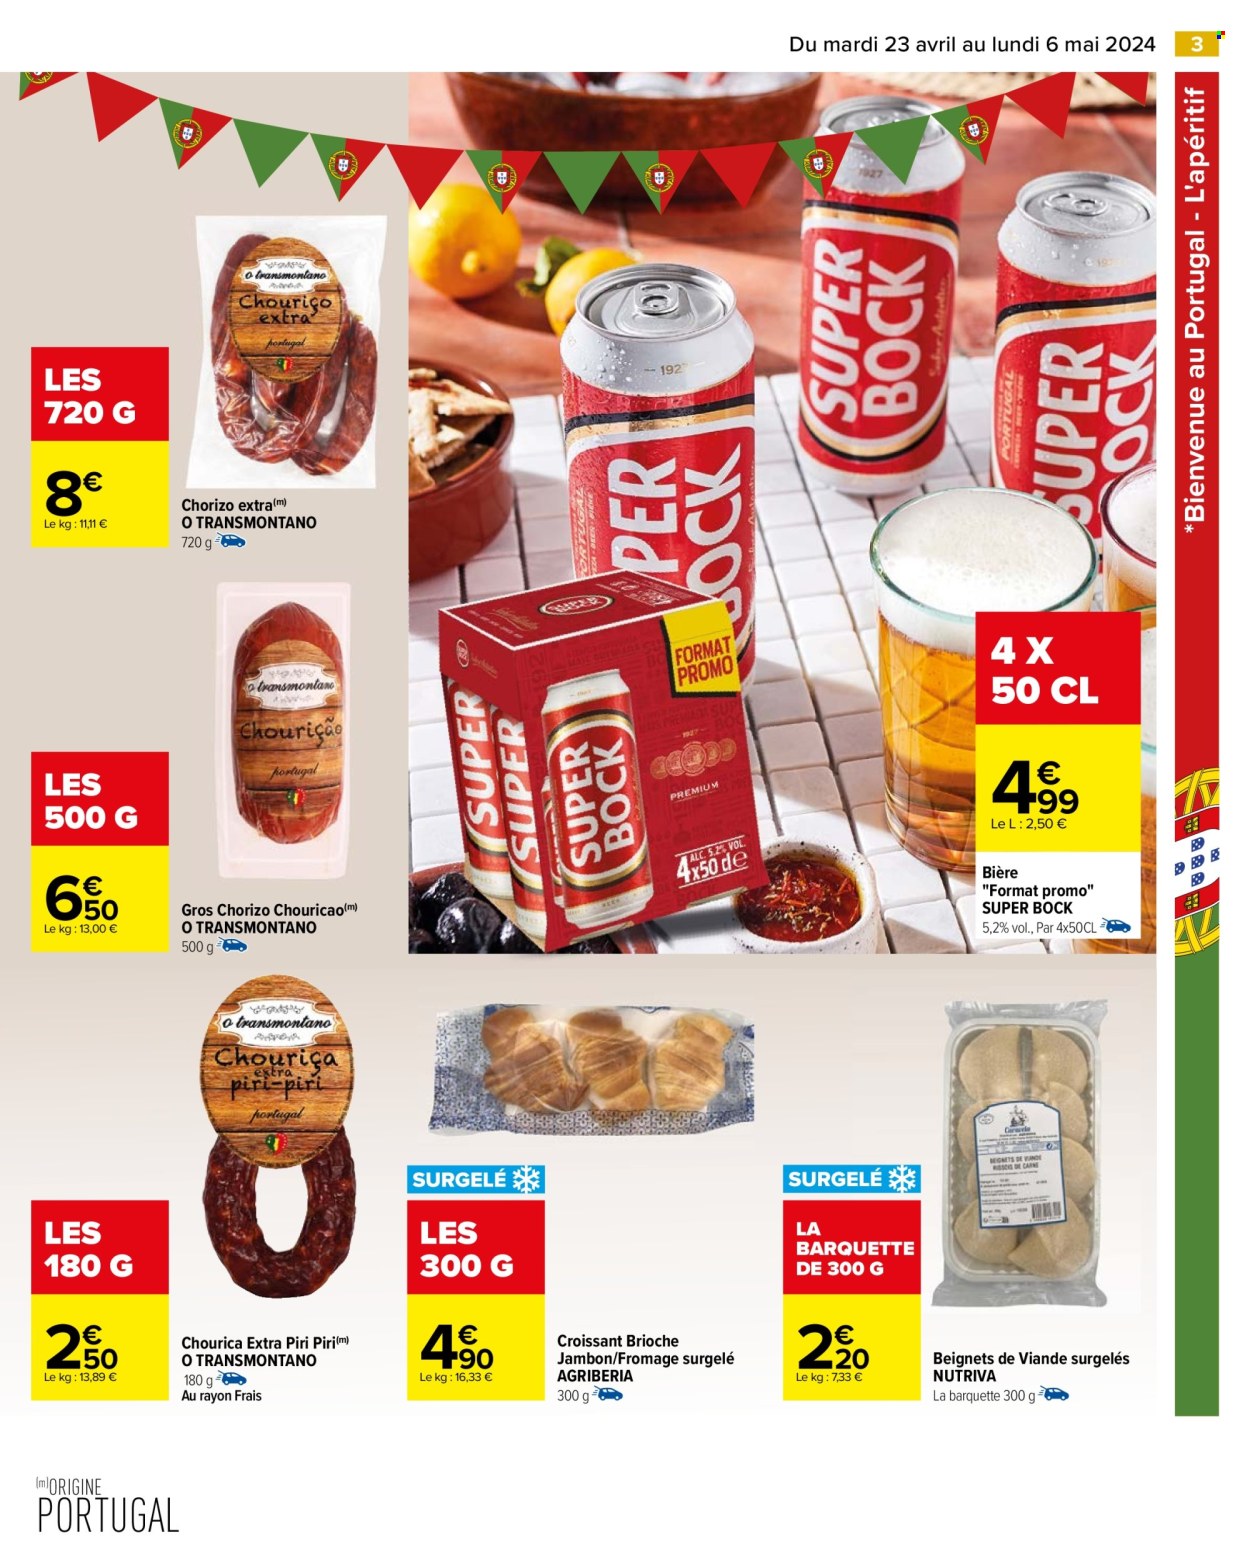 thumbnail - Catalogue Carrefour Hypermarchés - 23/04/2024 - 06/05/2024 - Produits soldés - chorizo, bière, alcool, croissant, brioche, jambon, fromage, viande, beignets, pâtisseries sucrées. Page 5.